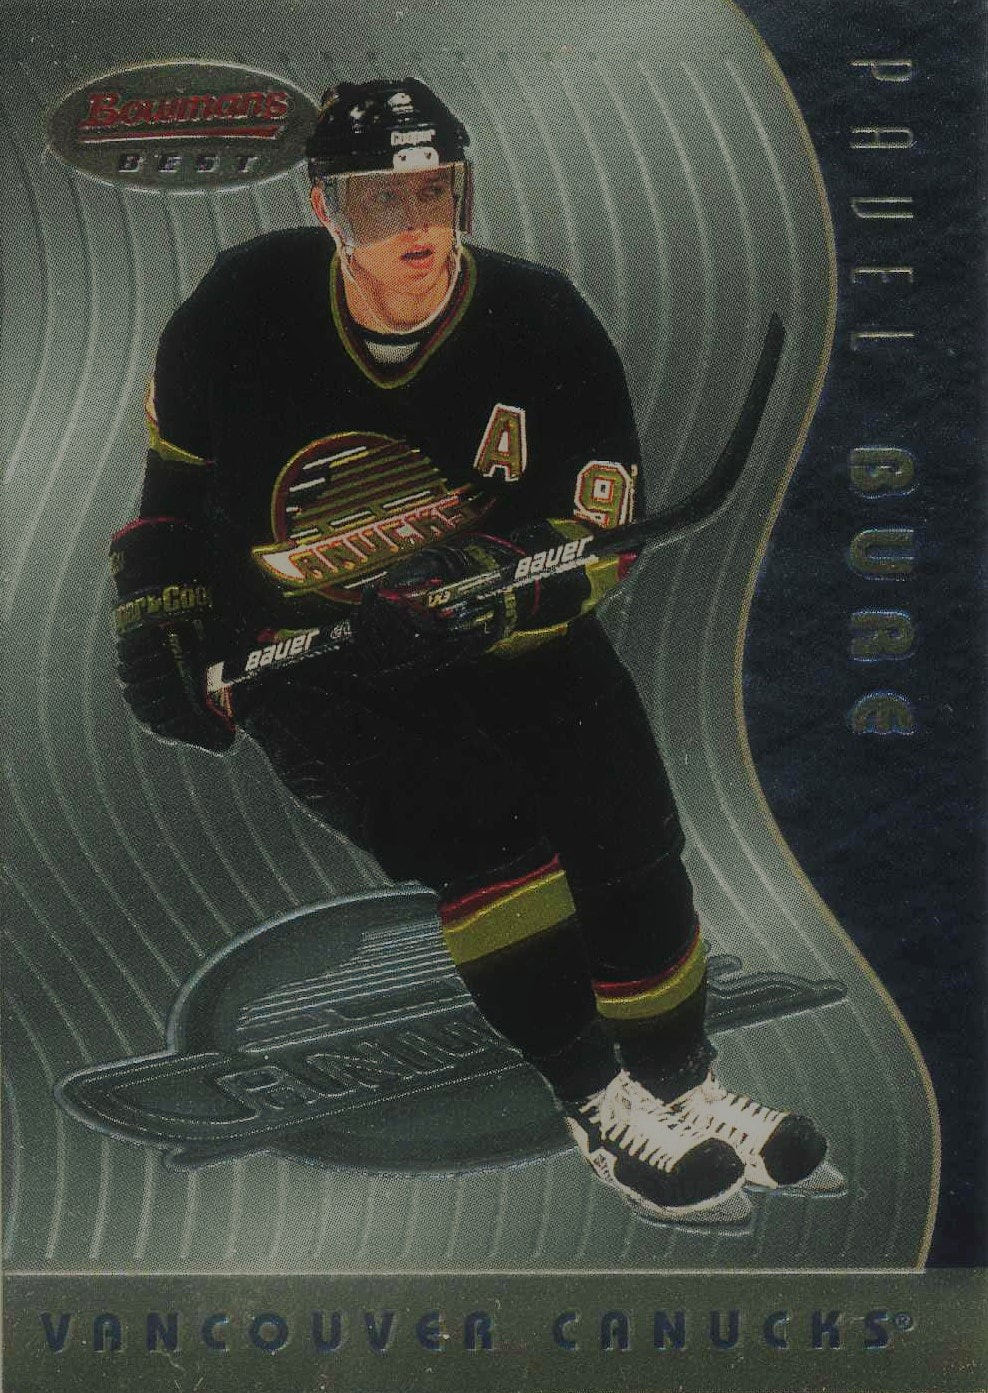  1997-98 Leaf International Hockey #135 Sergei Fedorov